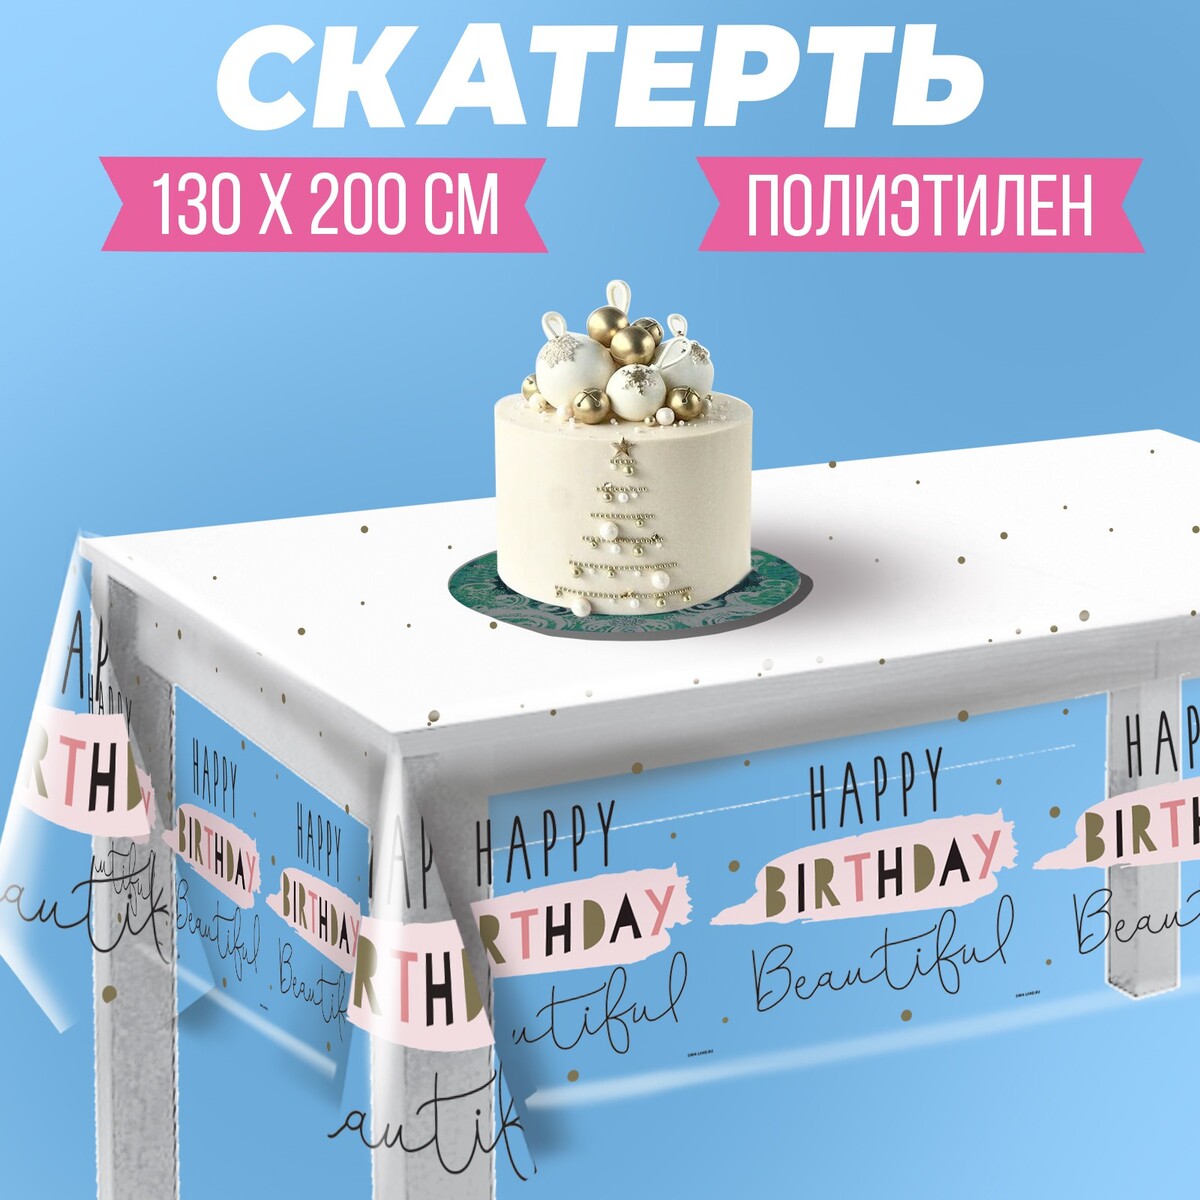 Скатерть happy birthday, 130 × 200 см наклейки happy birthday dc66 07 13 29